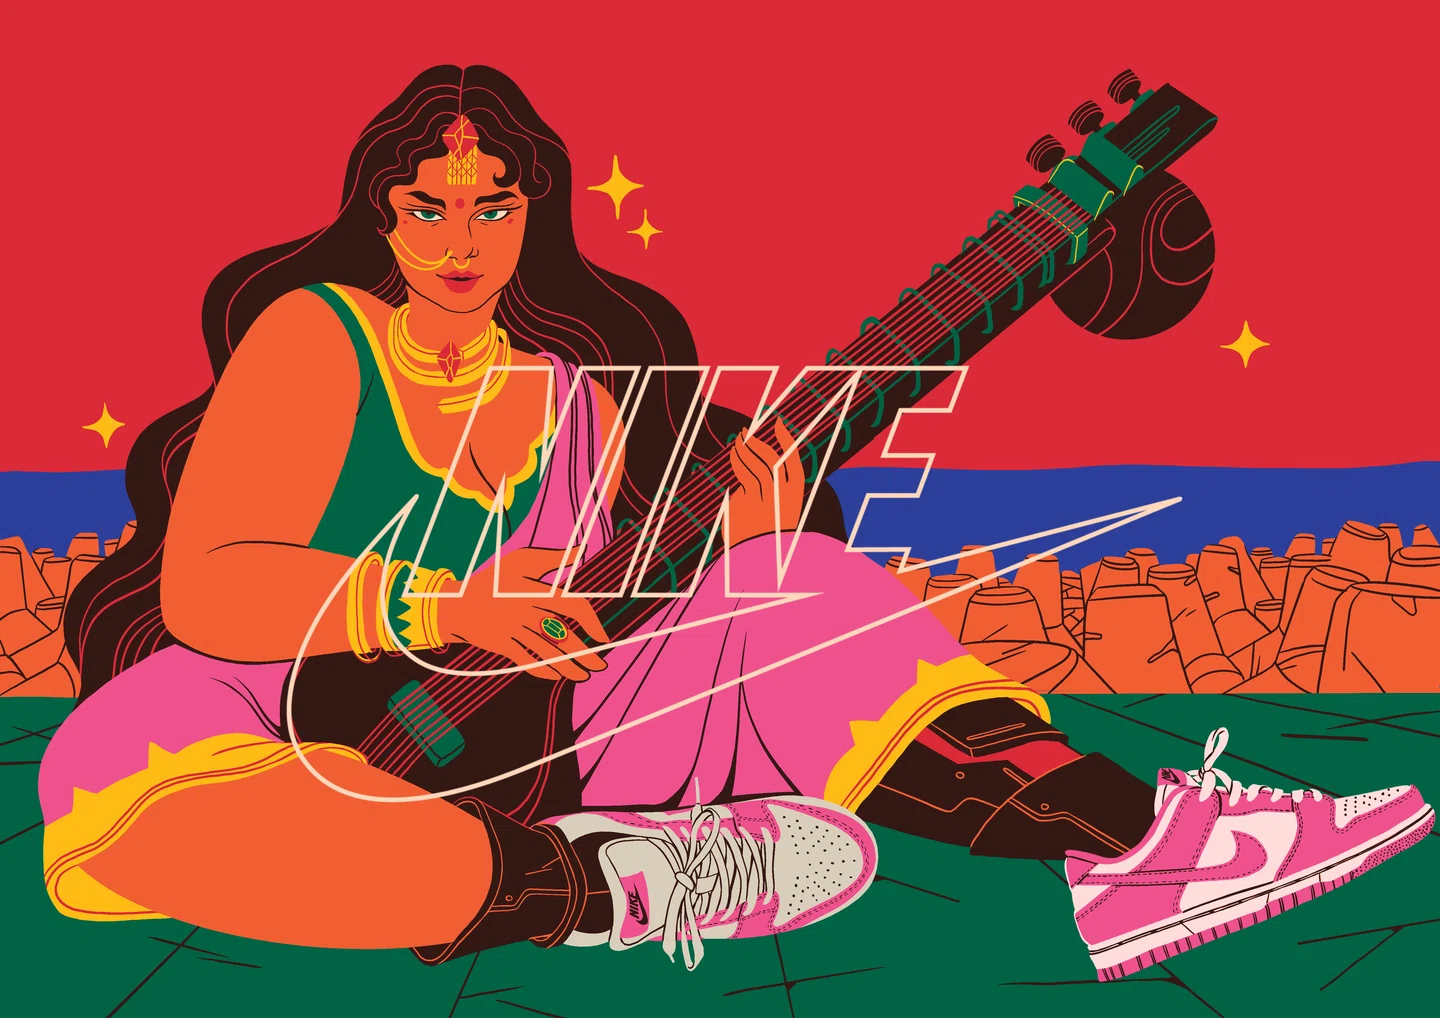 Retrofuturismo e maximalismo colidem na campanha inspirada em Mumbai do Boomranng Studio para a Nike